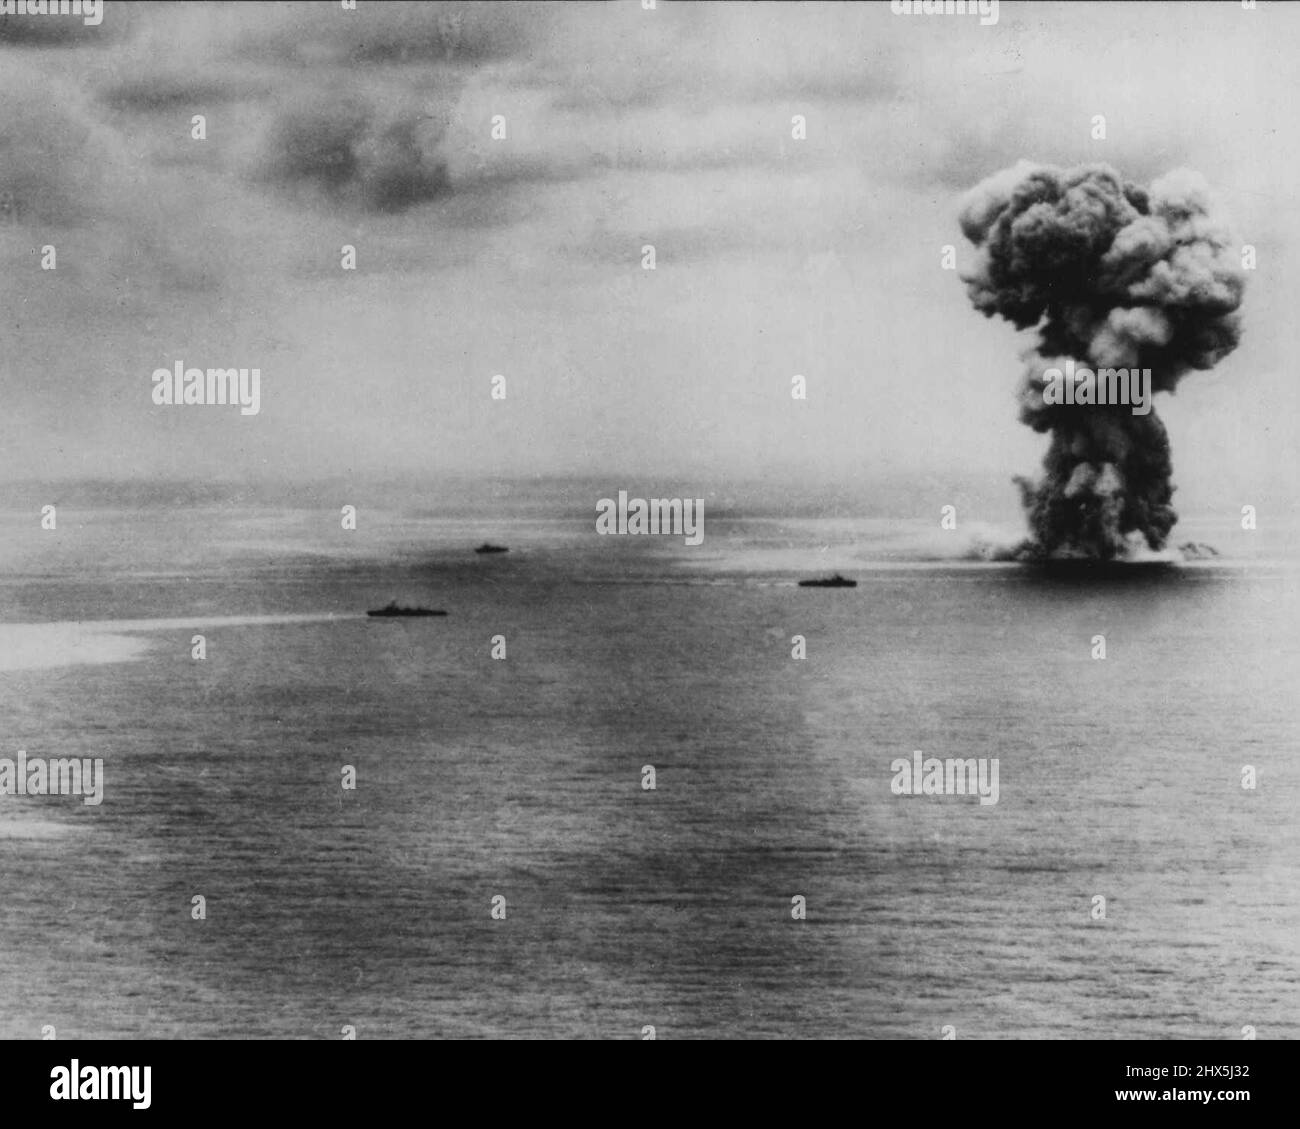 Das Ende des Yamato -- das Yamato wird ein paar Minuten gezeigt, bevor sie von den Wellen erungulst wurde. Trotz des schweren Flugabwehrfeuers der Yamato und ihrer Abschirmtruppe drückten Marinepiloten den Angriff nach Hause und schlugen mit mindestens acht Torpedos und acht schweren Bomben auf das Schlachtschiff. In dieser Serie von drei Action Shots wurde Japans mächtiges Schlachtschiff, der Yamato, im Ostchinesischen Meer nach einem zerschlagenden Angriff von schnellen US-Trägertruppe-Tauchbombern am 7. April 194-5 versenkt. In der Schlacht versenkte die air­craft auch 3 Zerstörer und 2 Kreuzer und ließ 3 weitere Zerstörer in Brand gehen. Mai 04, Stockfoto